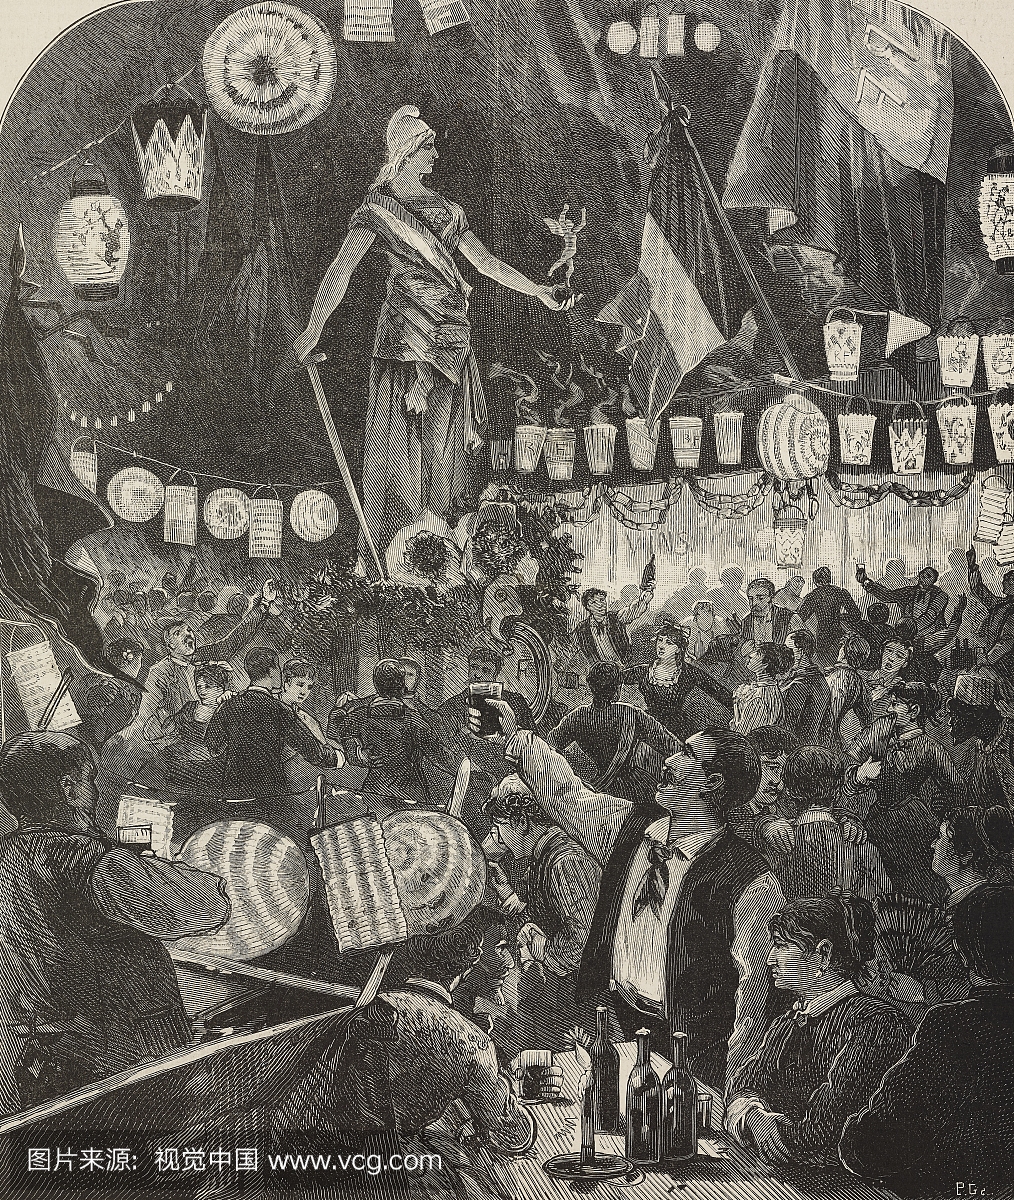 1871年7月14日在法国巴黎举行的国家法定节假